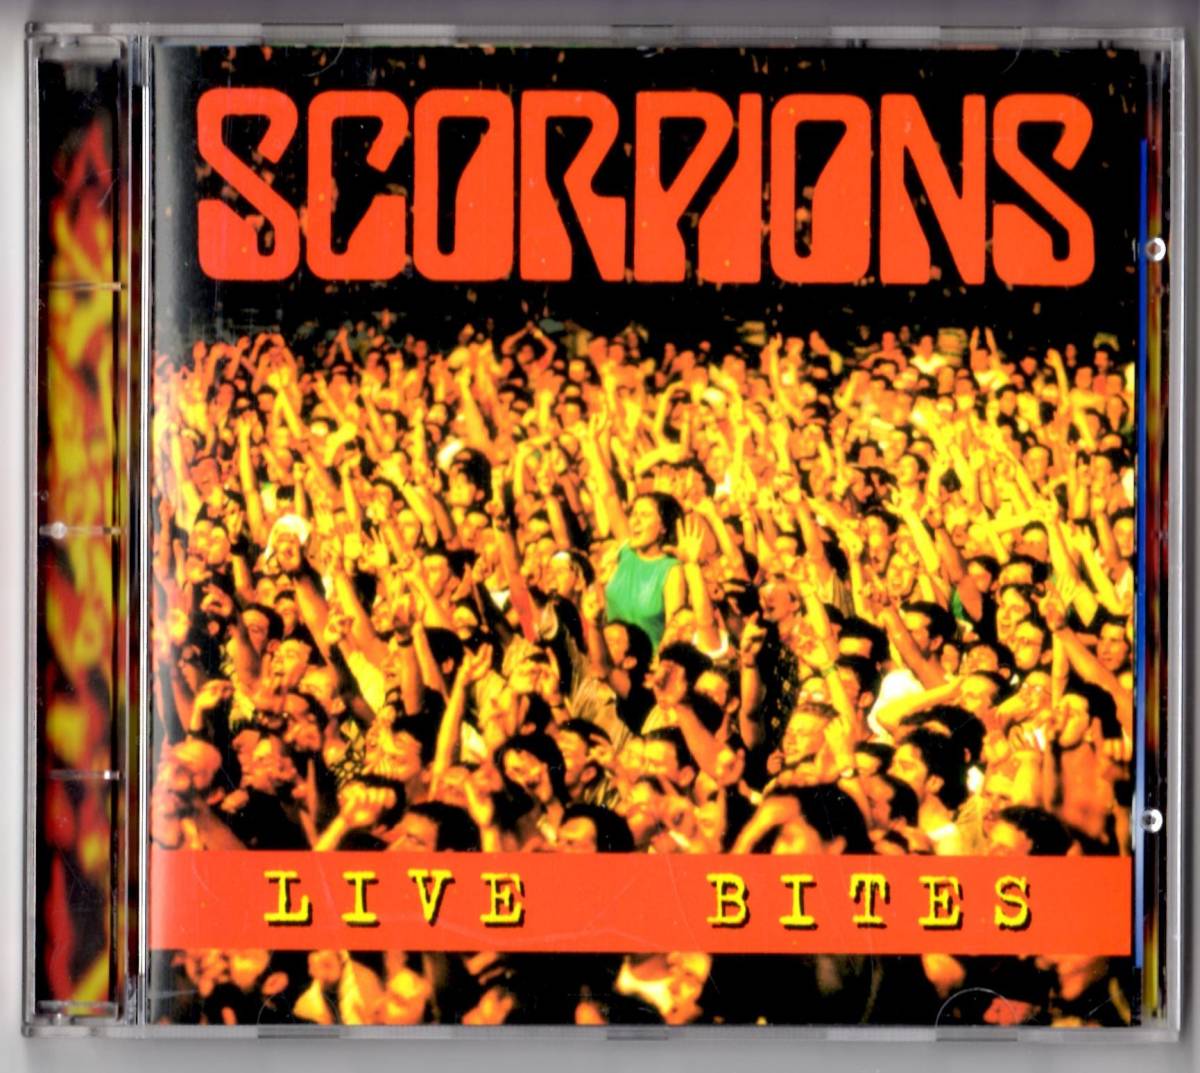 Used CD 輸入盤 スコーピオンズ Scorpions『ライヴ・バイツ』- Live Bites(1995年)全14曲アメリカ盤